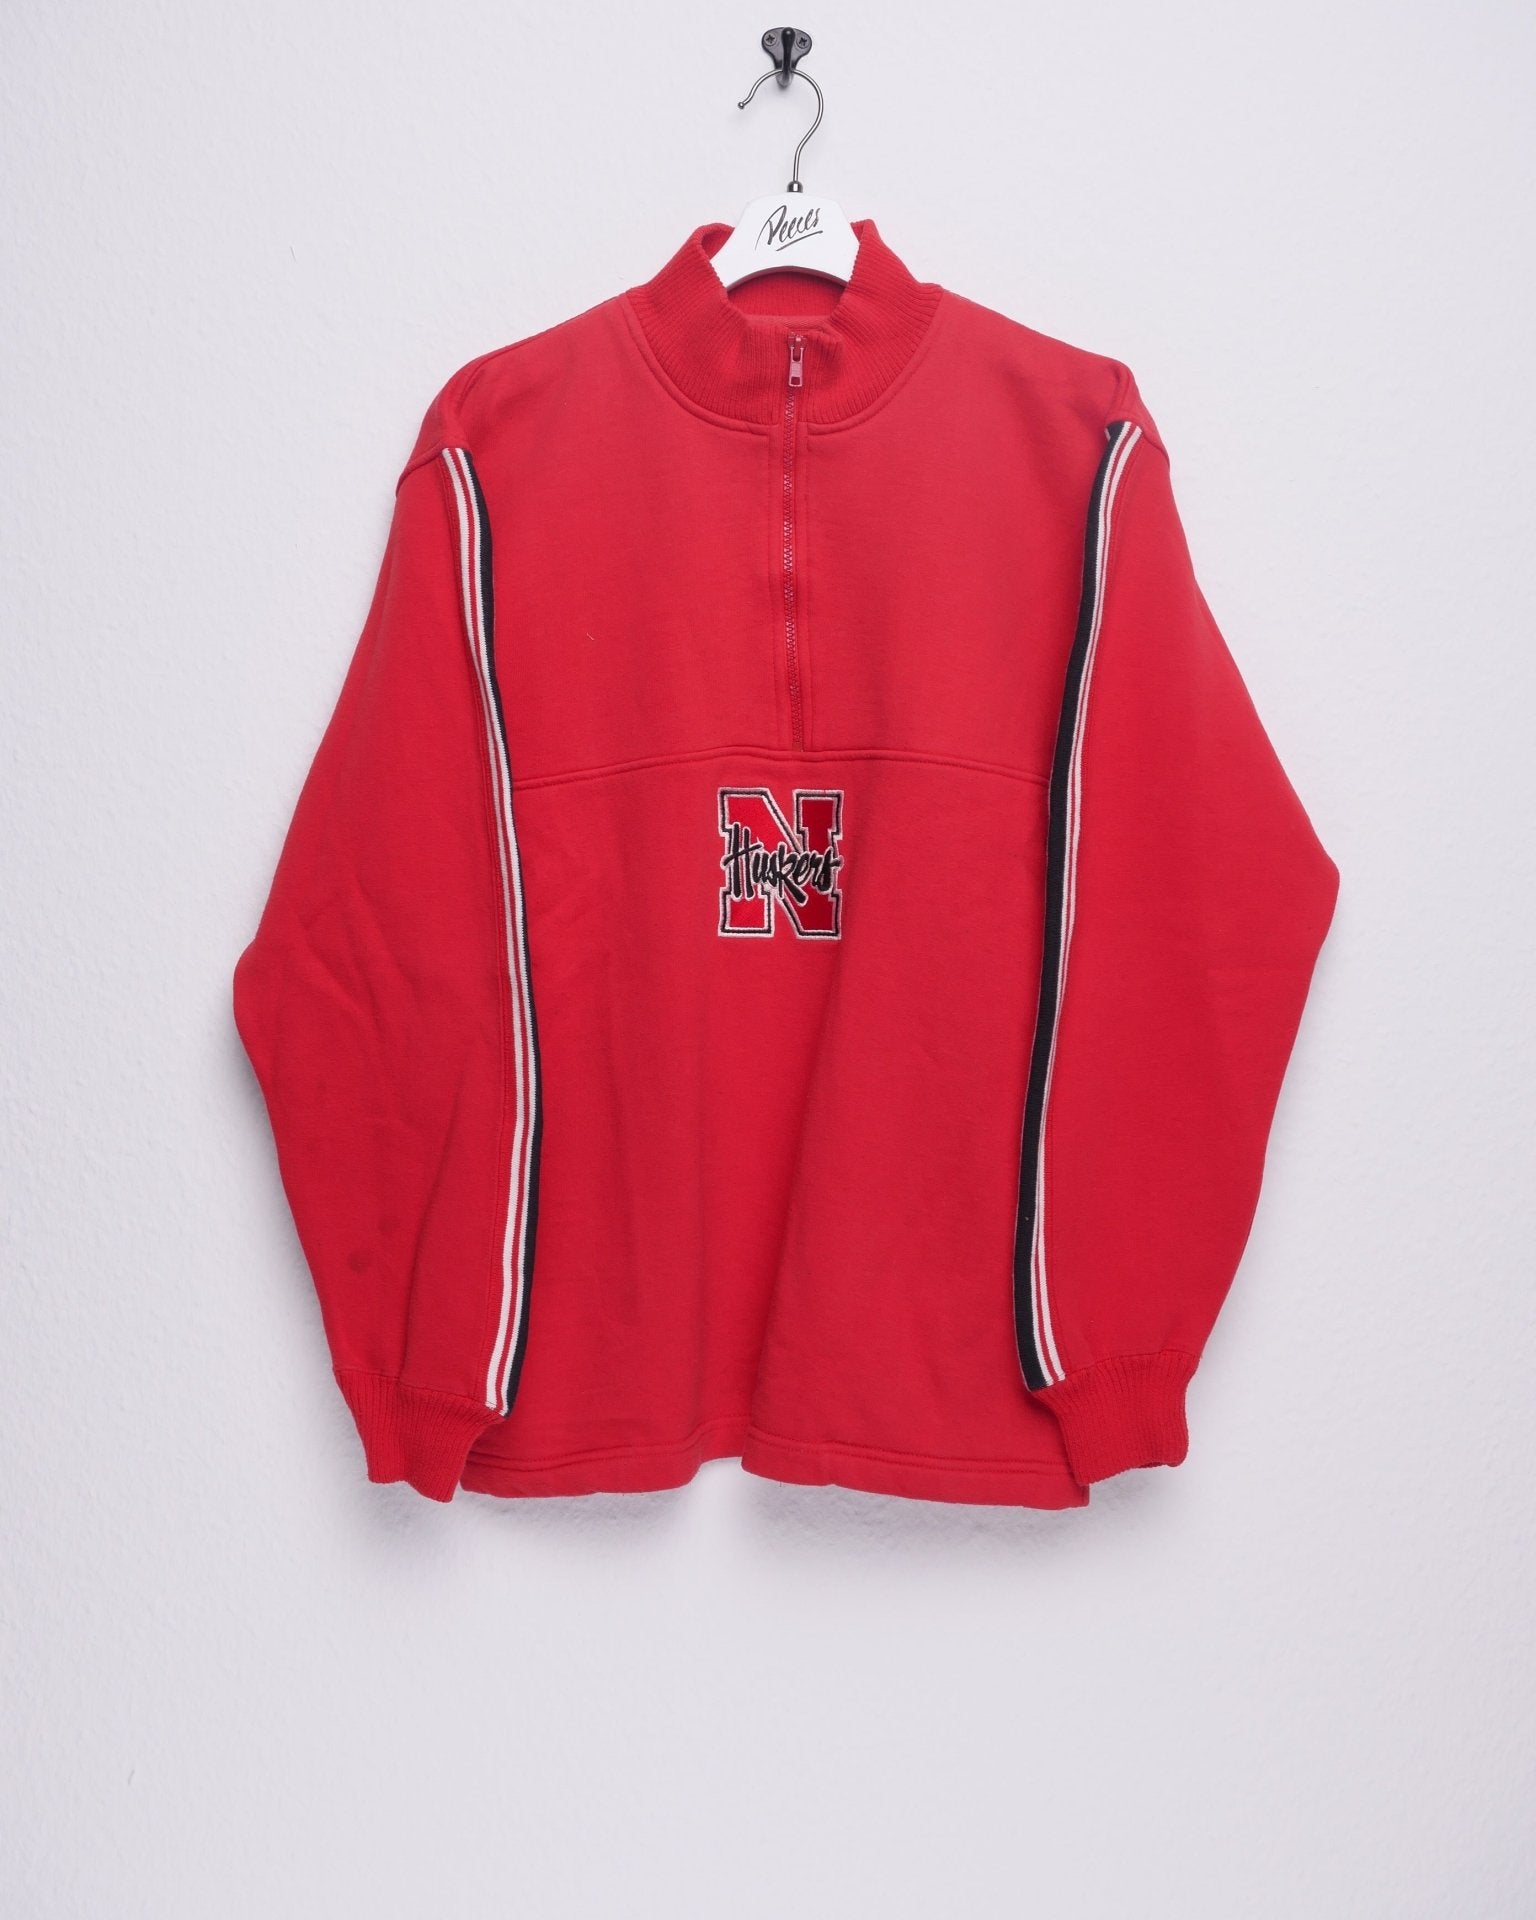 Nebraska Huskers embroidered Logo Vintage Half Zip Sweater - Peeces